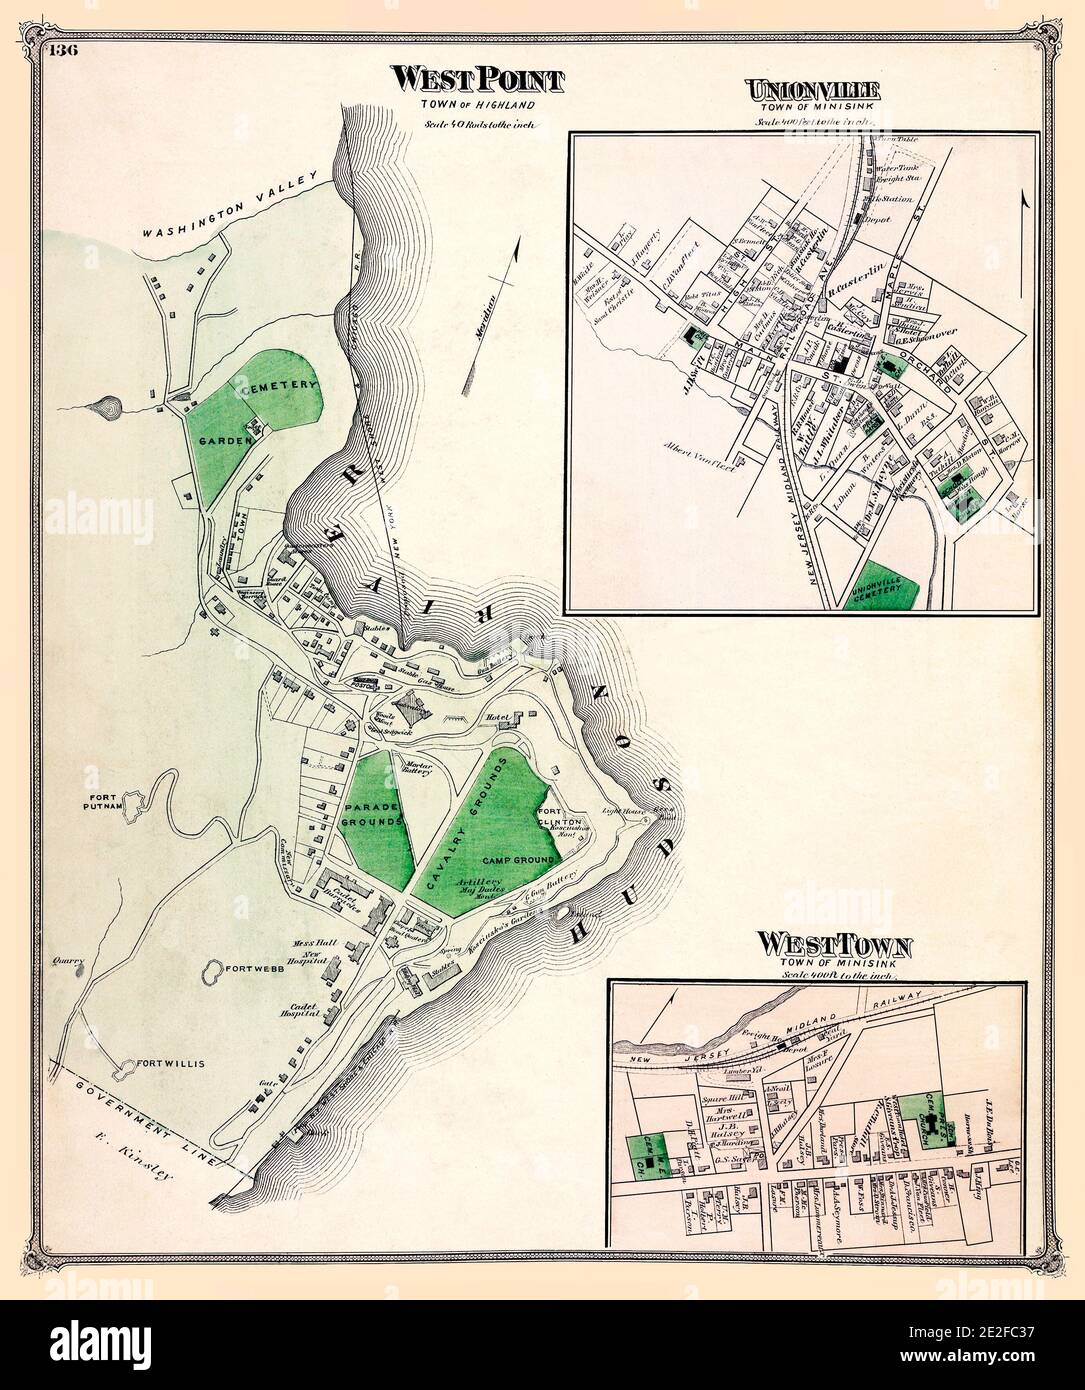 Mapa de West Point y áreas locales en la ciudad de Minisink del 'Atlas of Orange County, NY.' Título original: 'West Point [Village]; Unionville [Village]; West Town [Village]' Publicado 1875. Muestra los nombres de los propietarios, ferrocarriles y otros detalles. Foto de stock